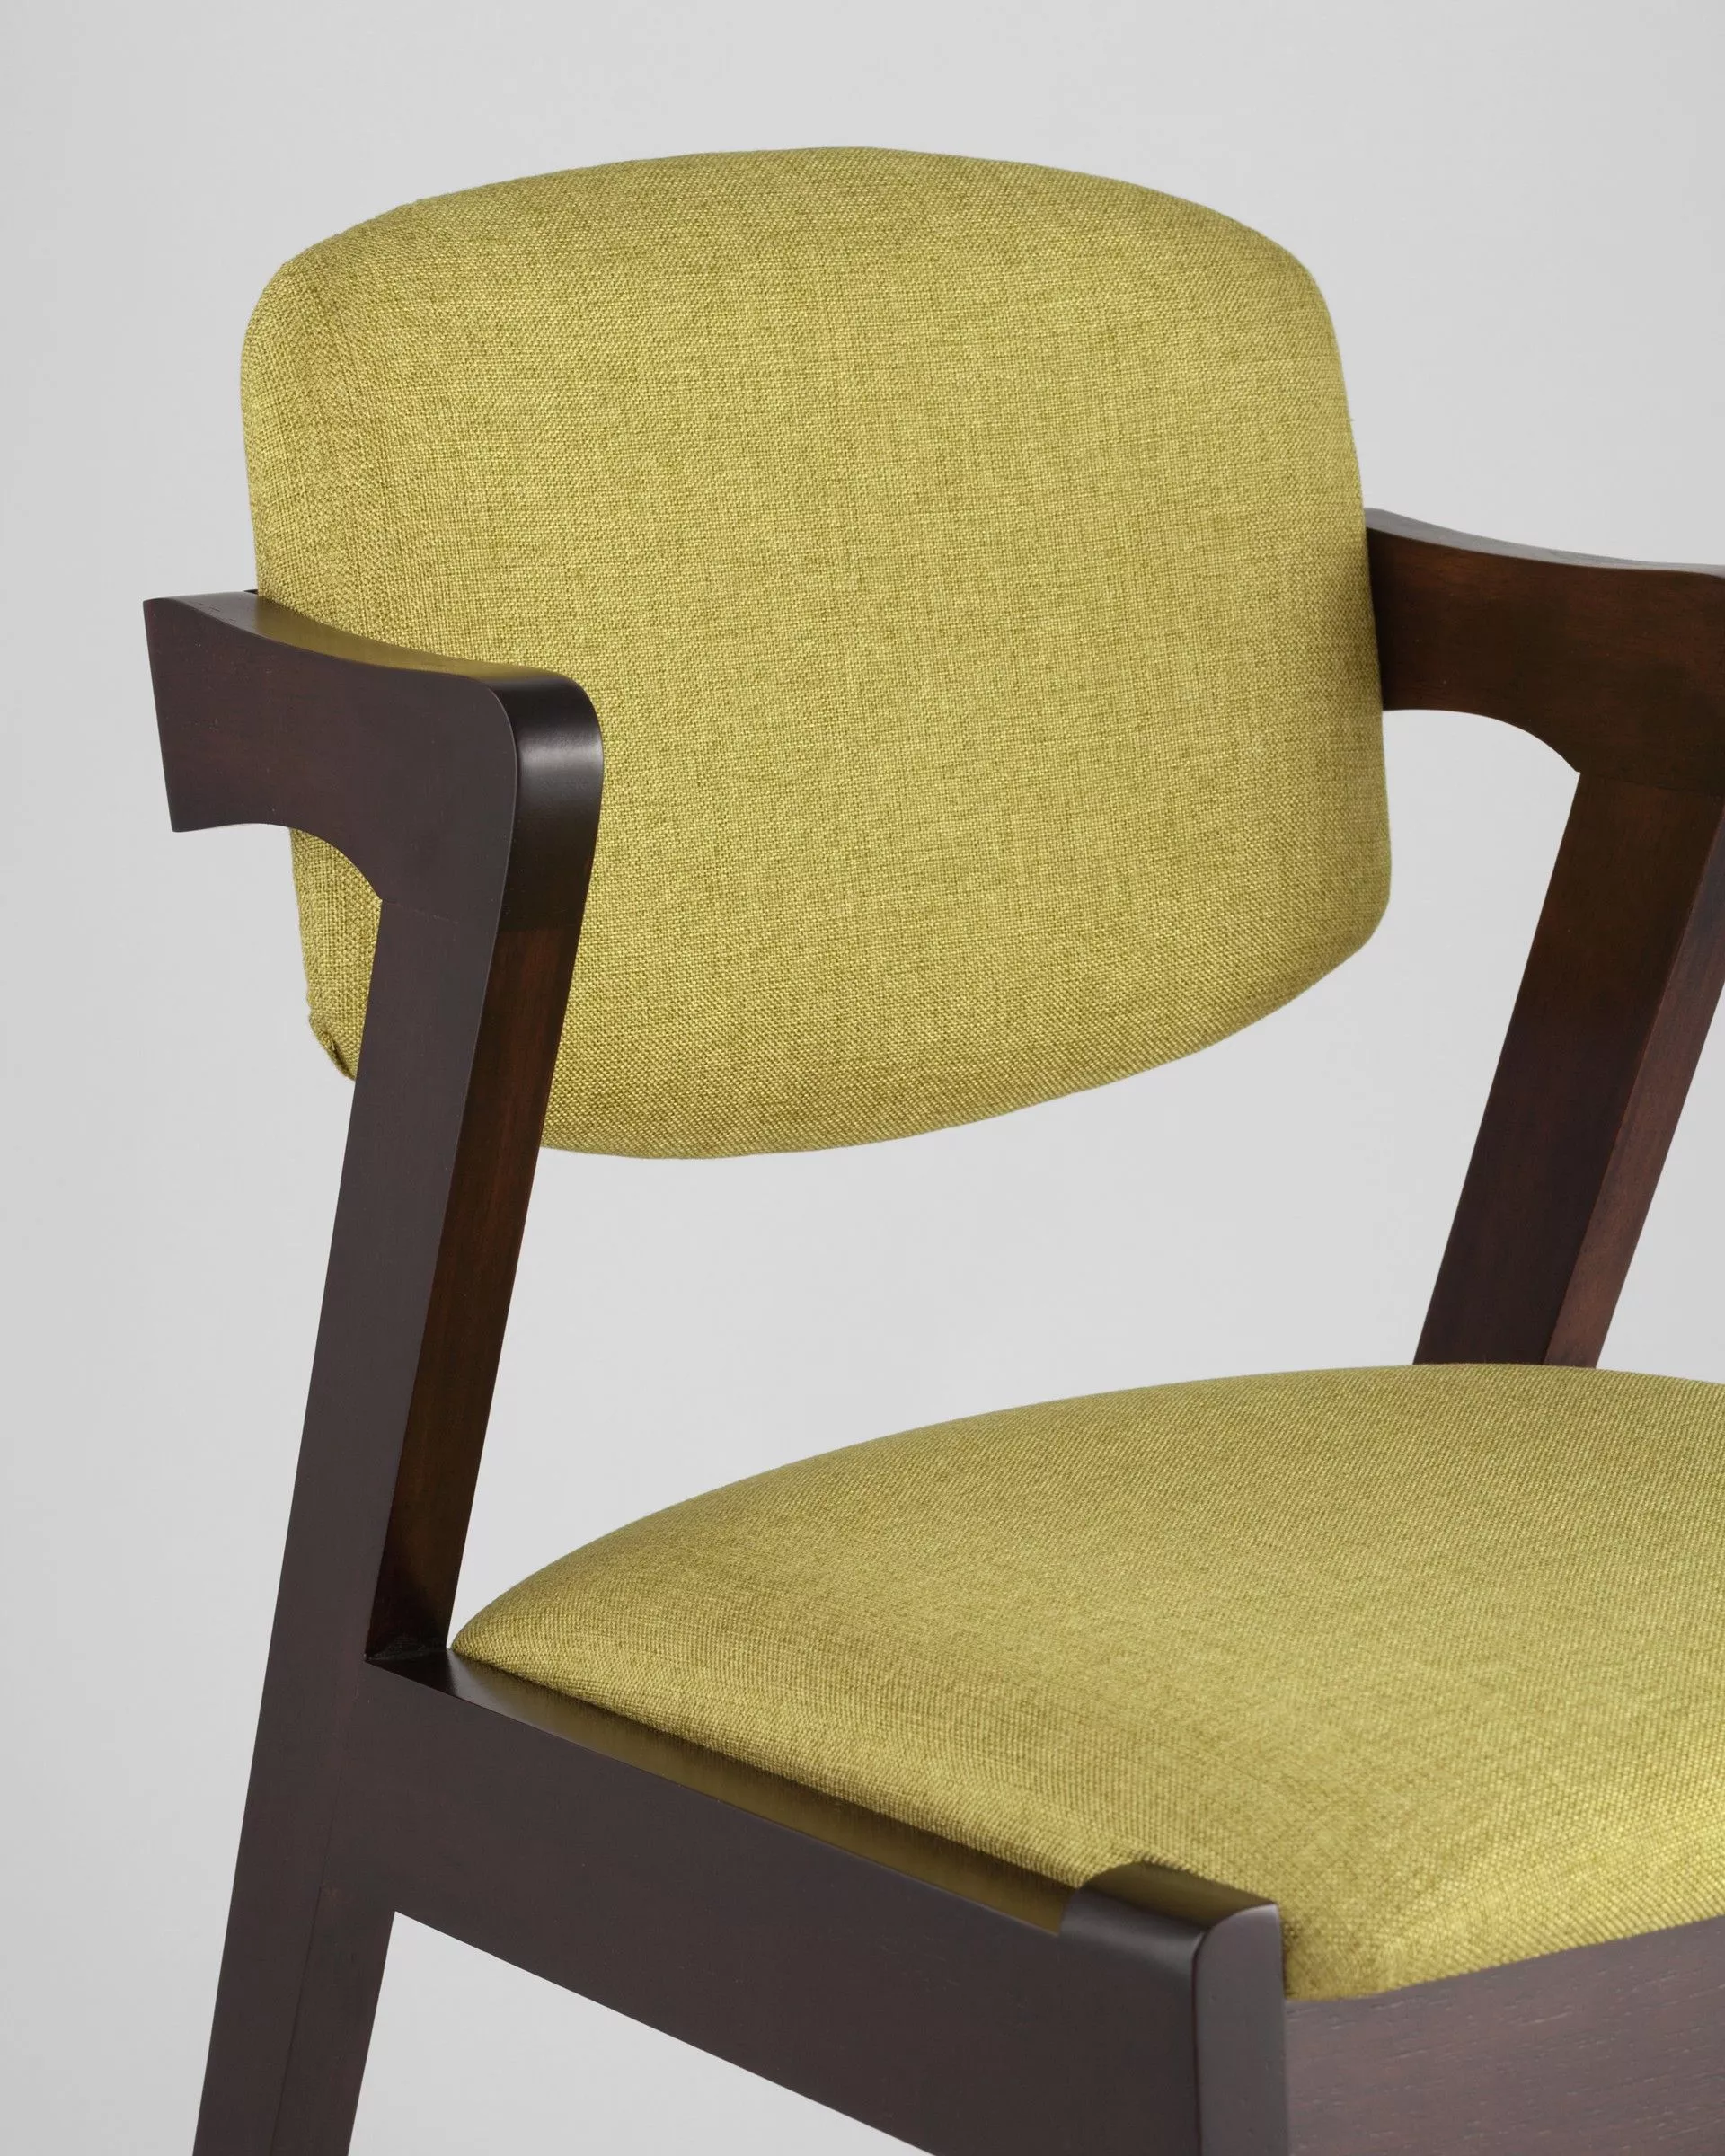 Комплект стульев обеденный VIVA оливковый 2 шт